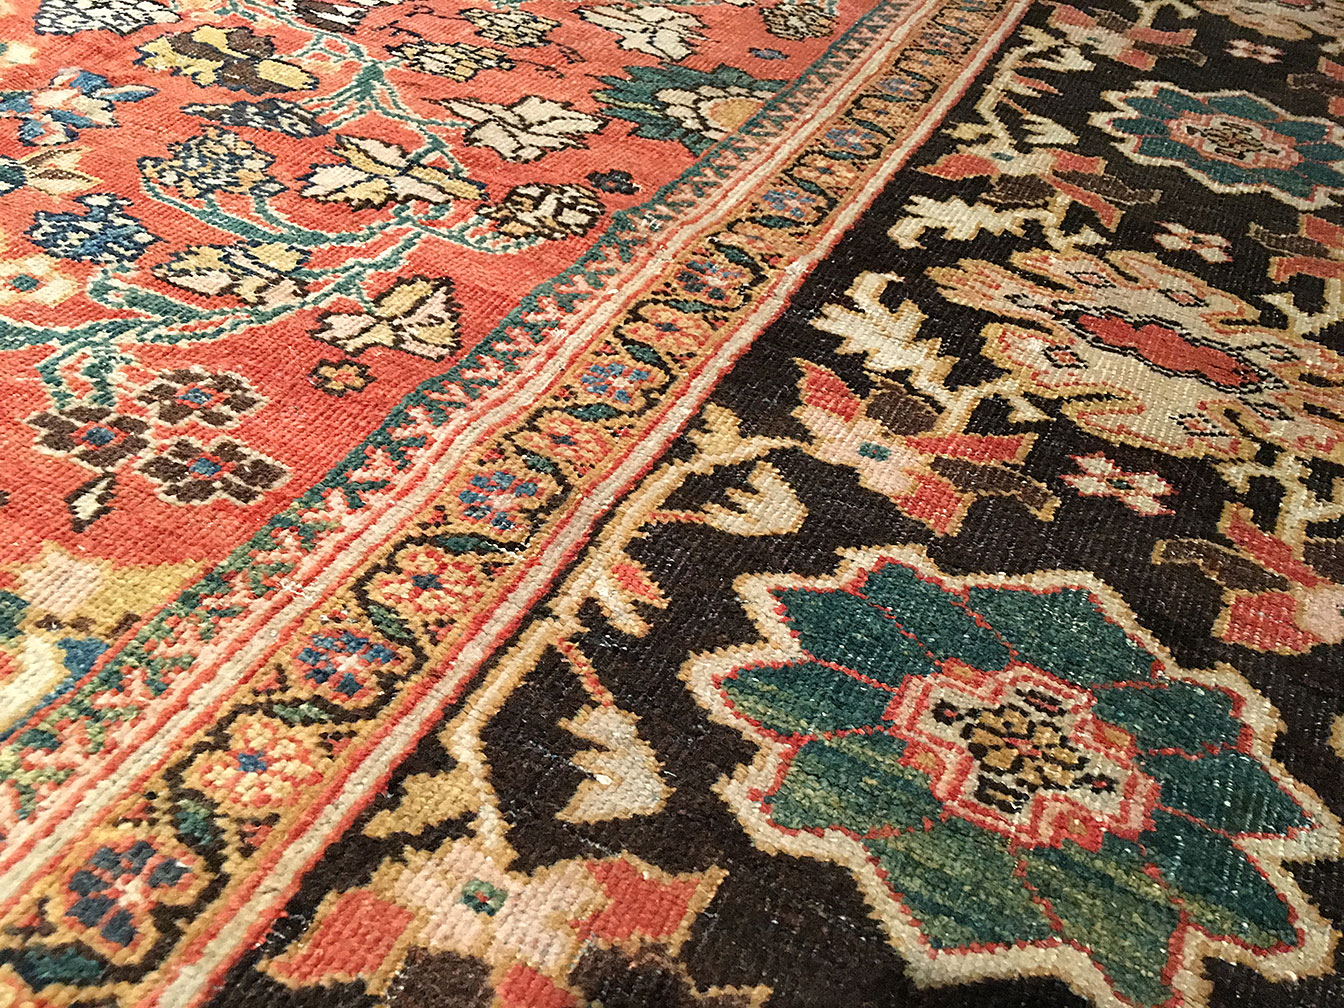 Antique sultan abad Carpet - # 51394